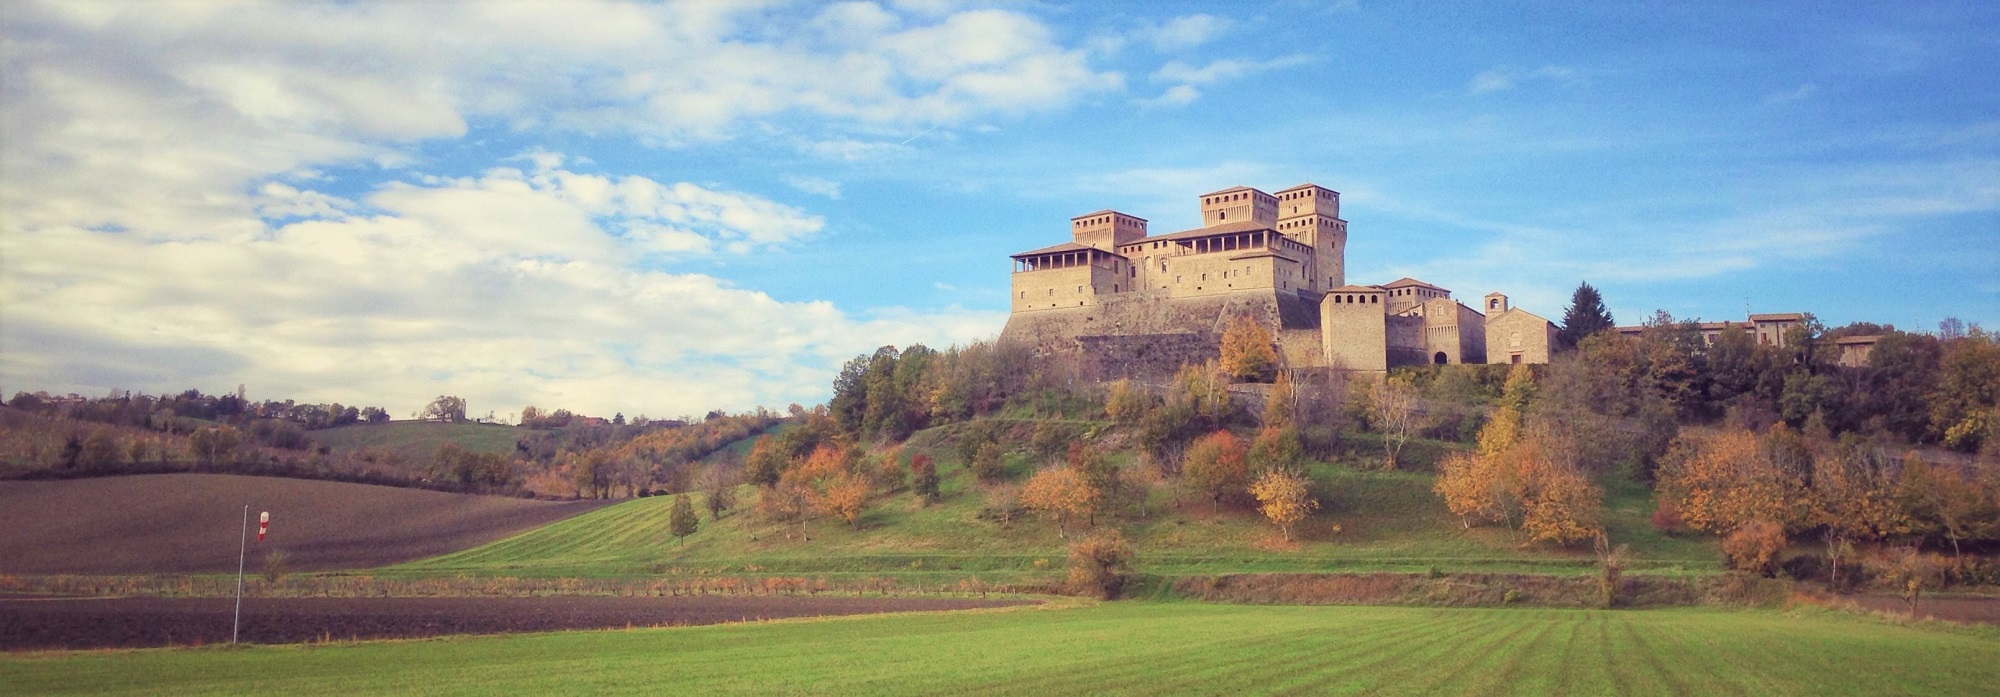 Passeggiate autoguidate e gratuite intorno al Castello di Torrechiara + Offerta Pic Nic